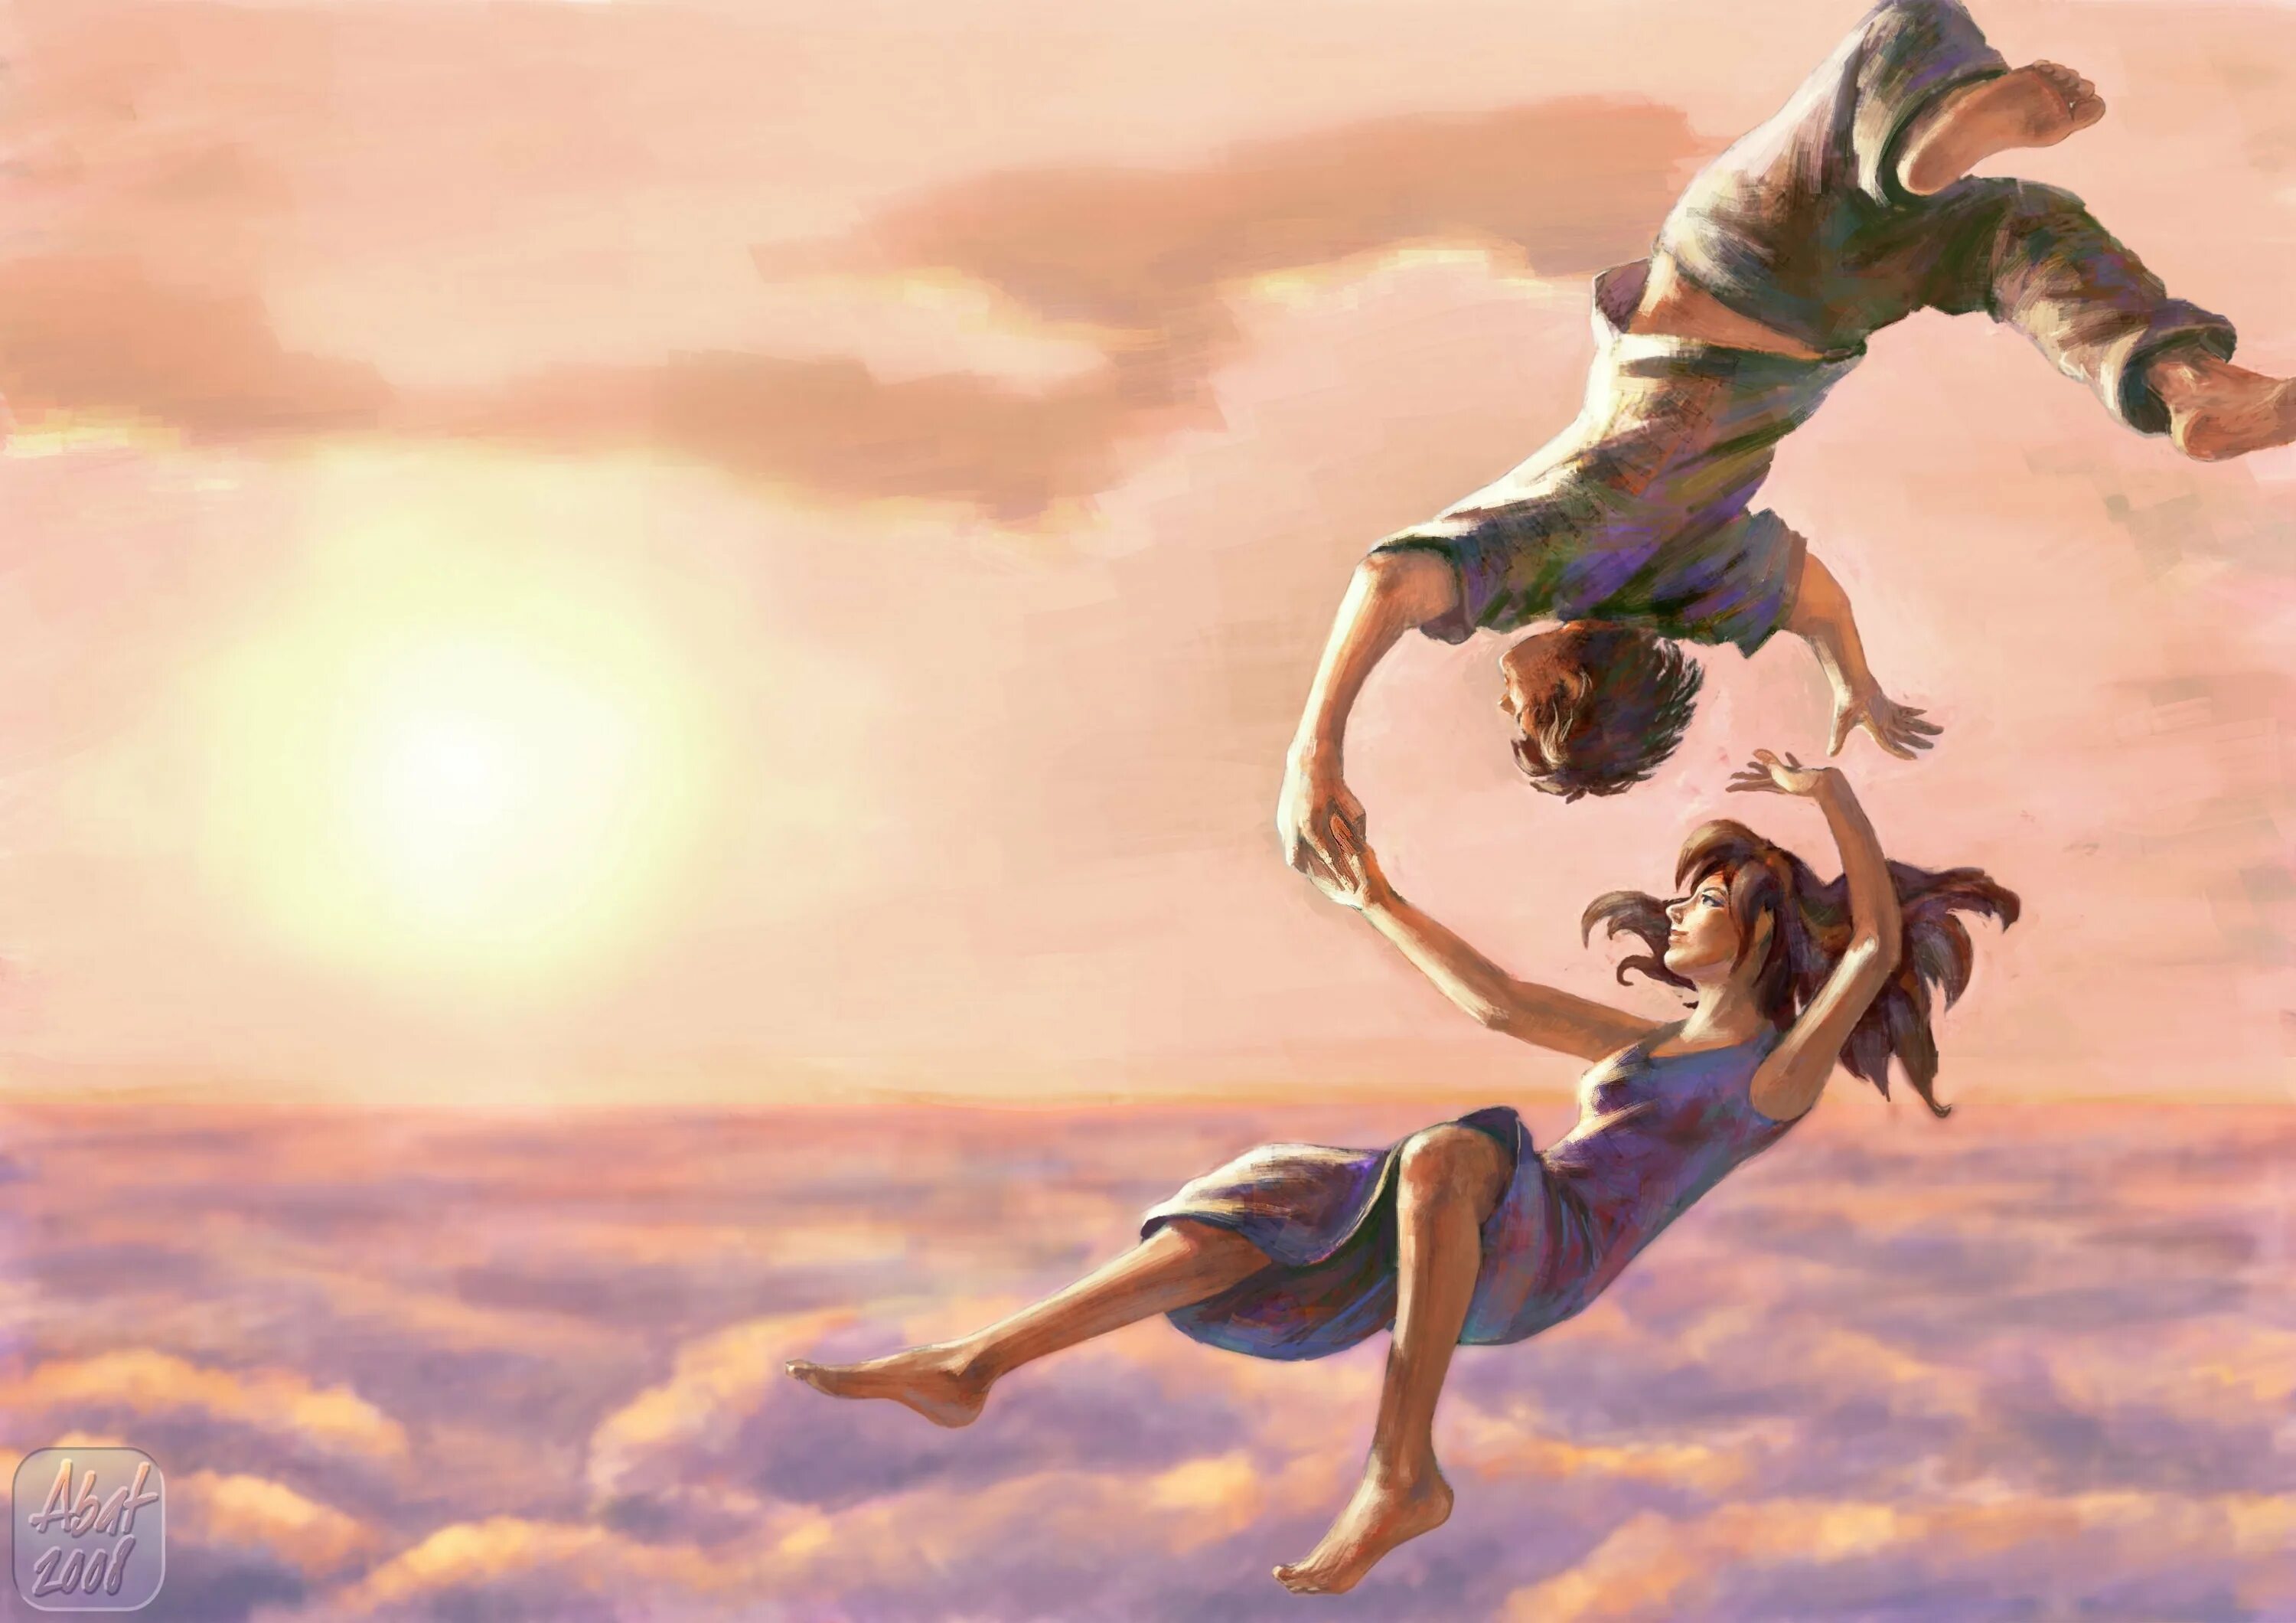 Доверие души. Девушка в прыжке. Картина счастье. Красивые иллюстрации. Полет души.